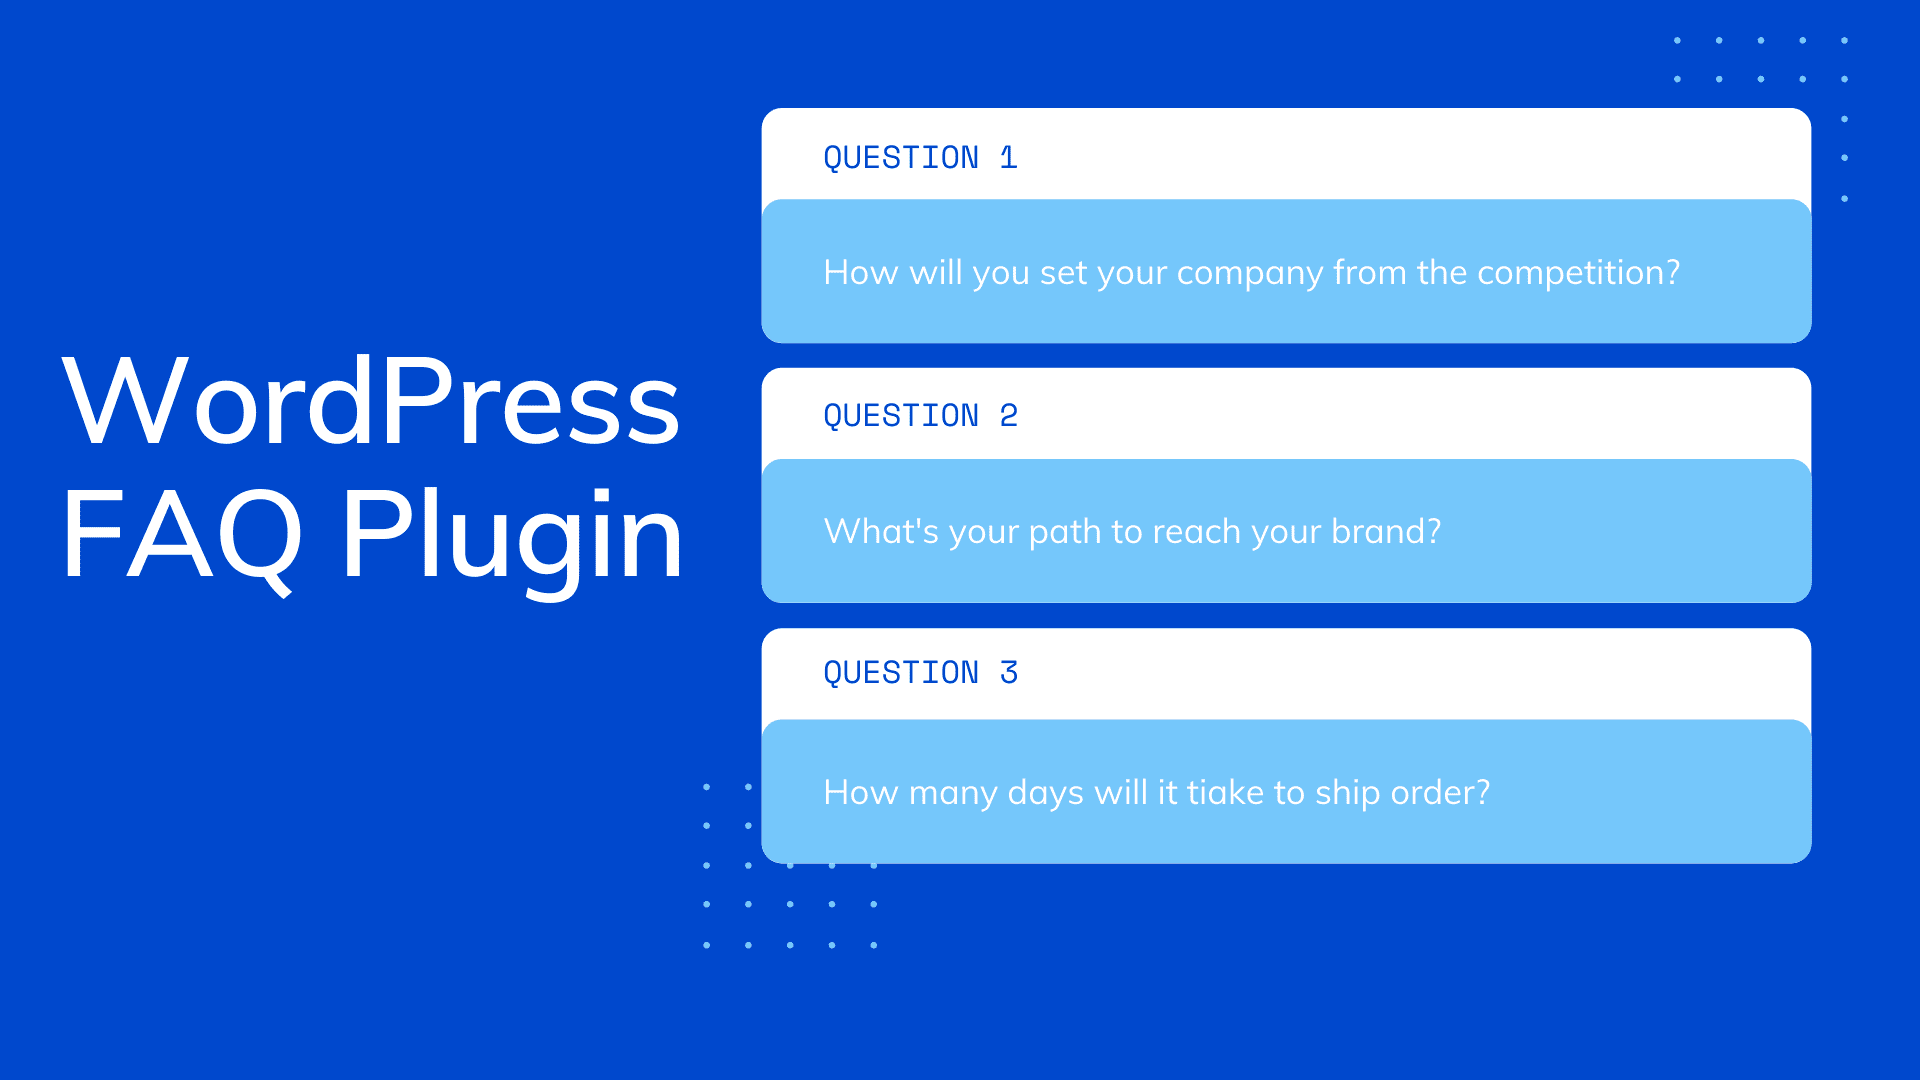 FAQ Plugin